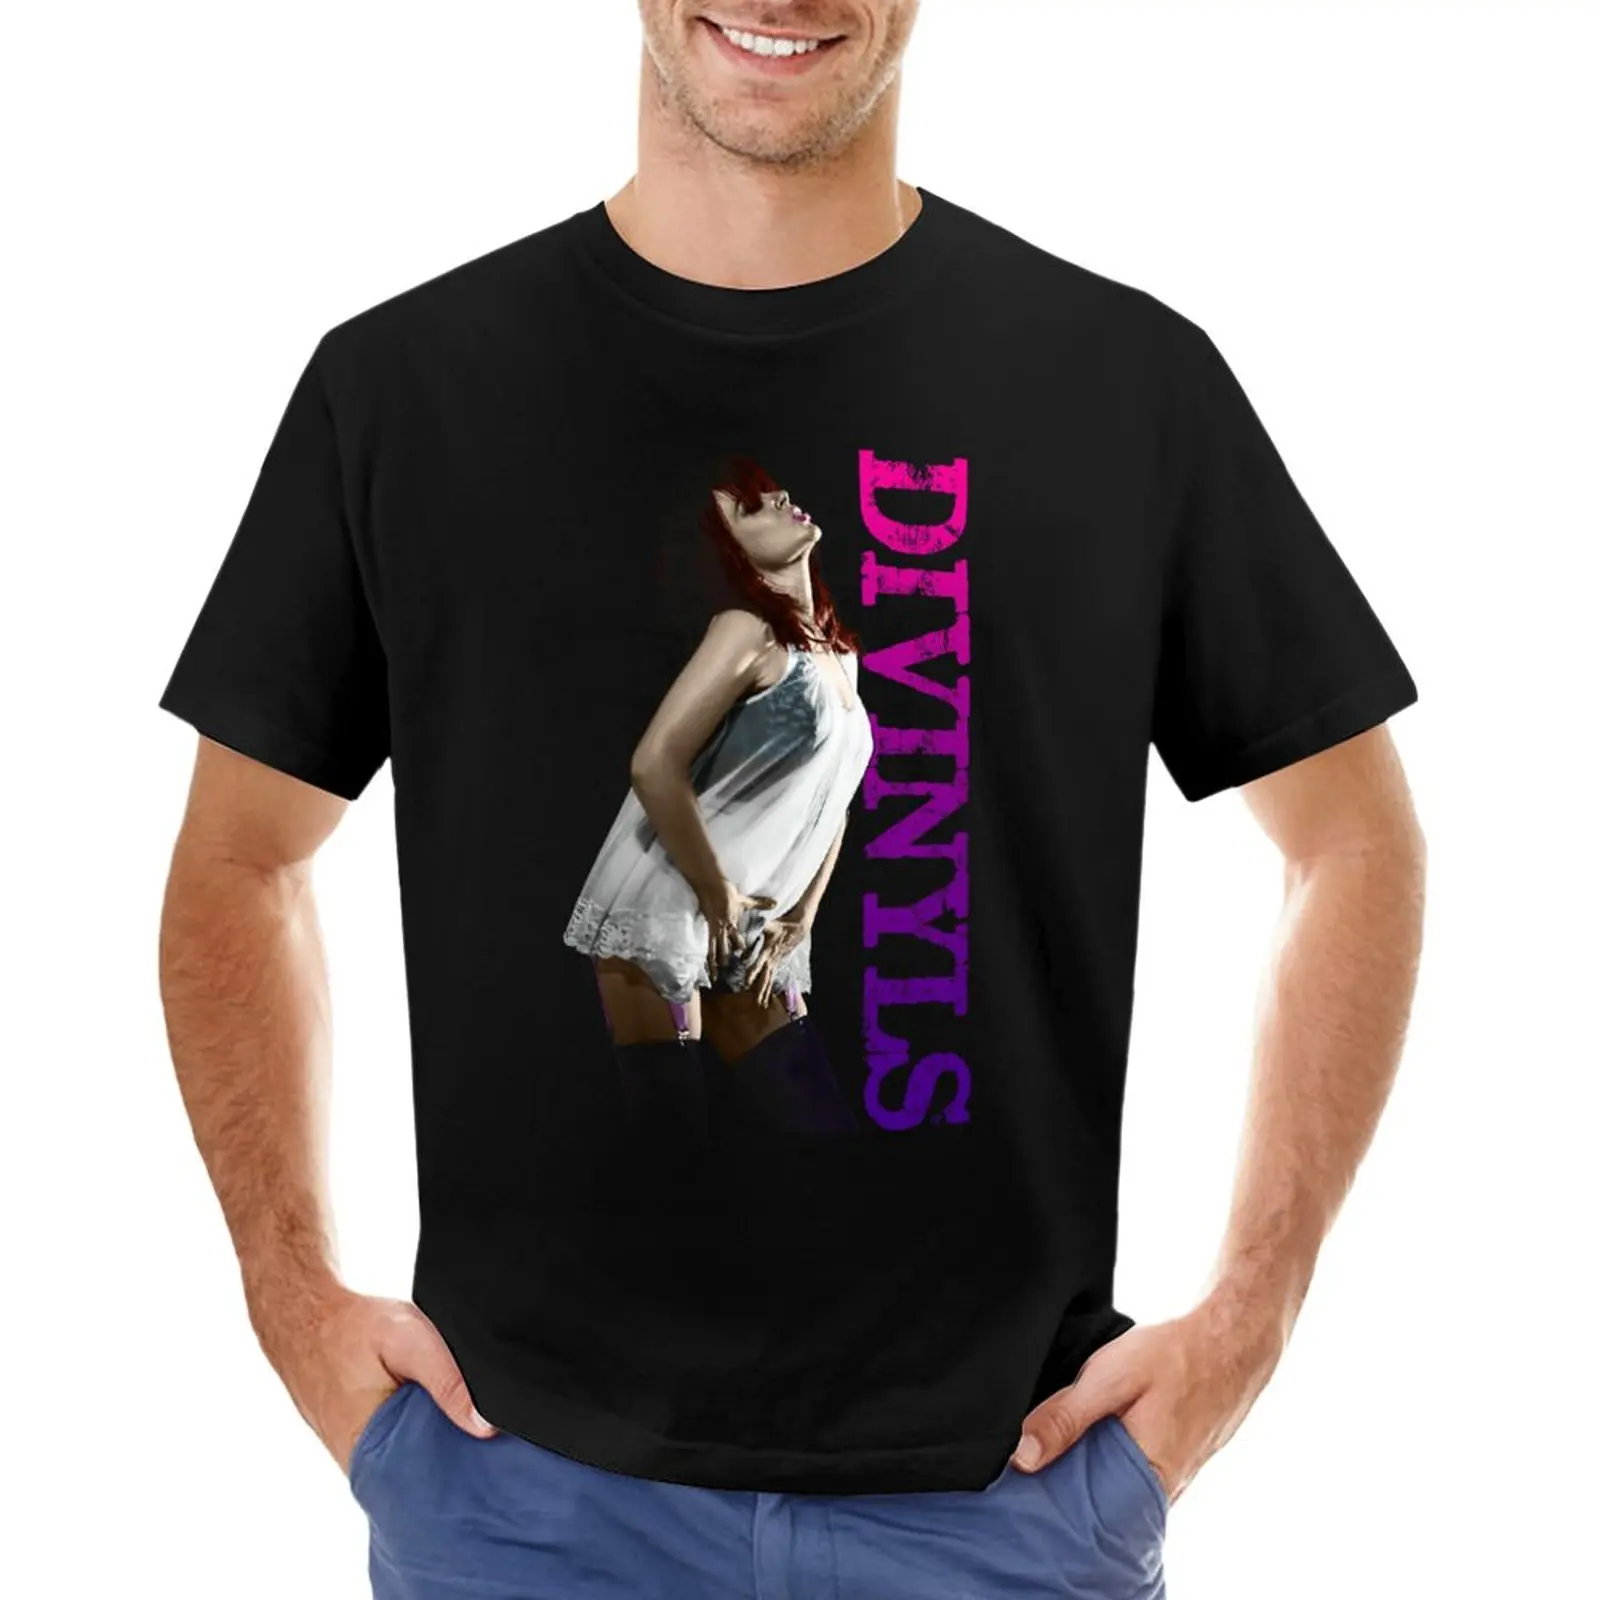 Divinyls - Chrissy Camiseta negra camisetas gato camisetas sudaderas ropa de verano de los Hombres de algodón t-shirt . ' - ' . 0